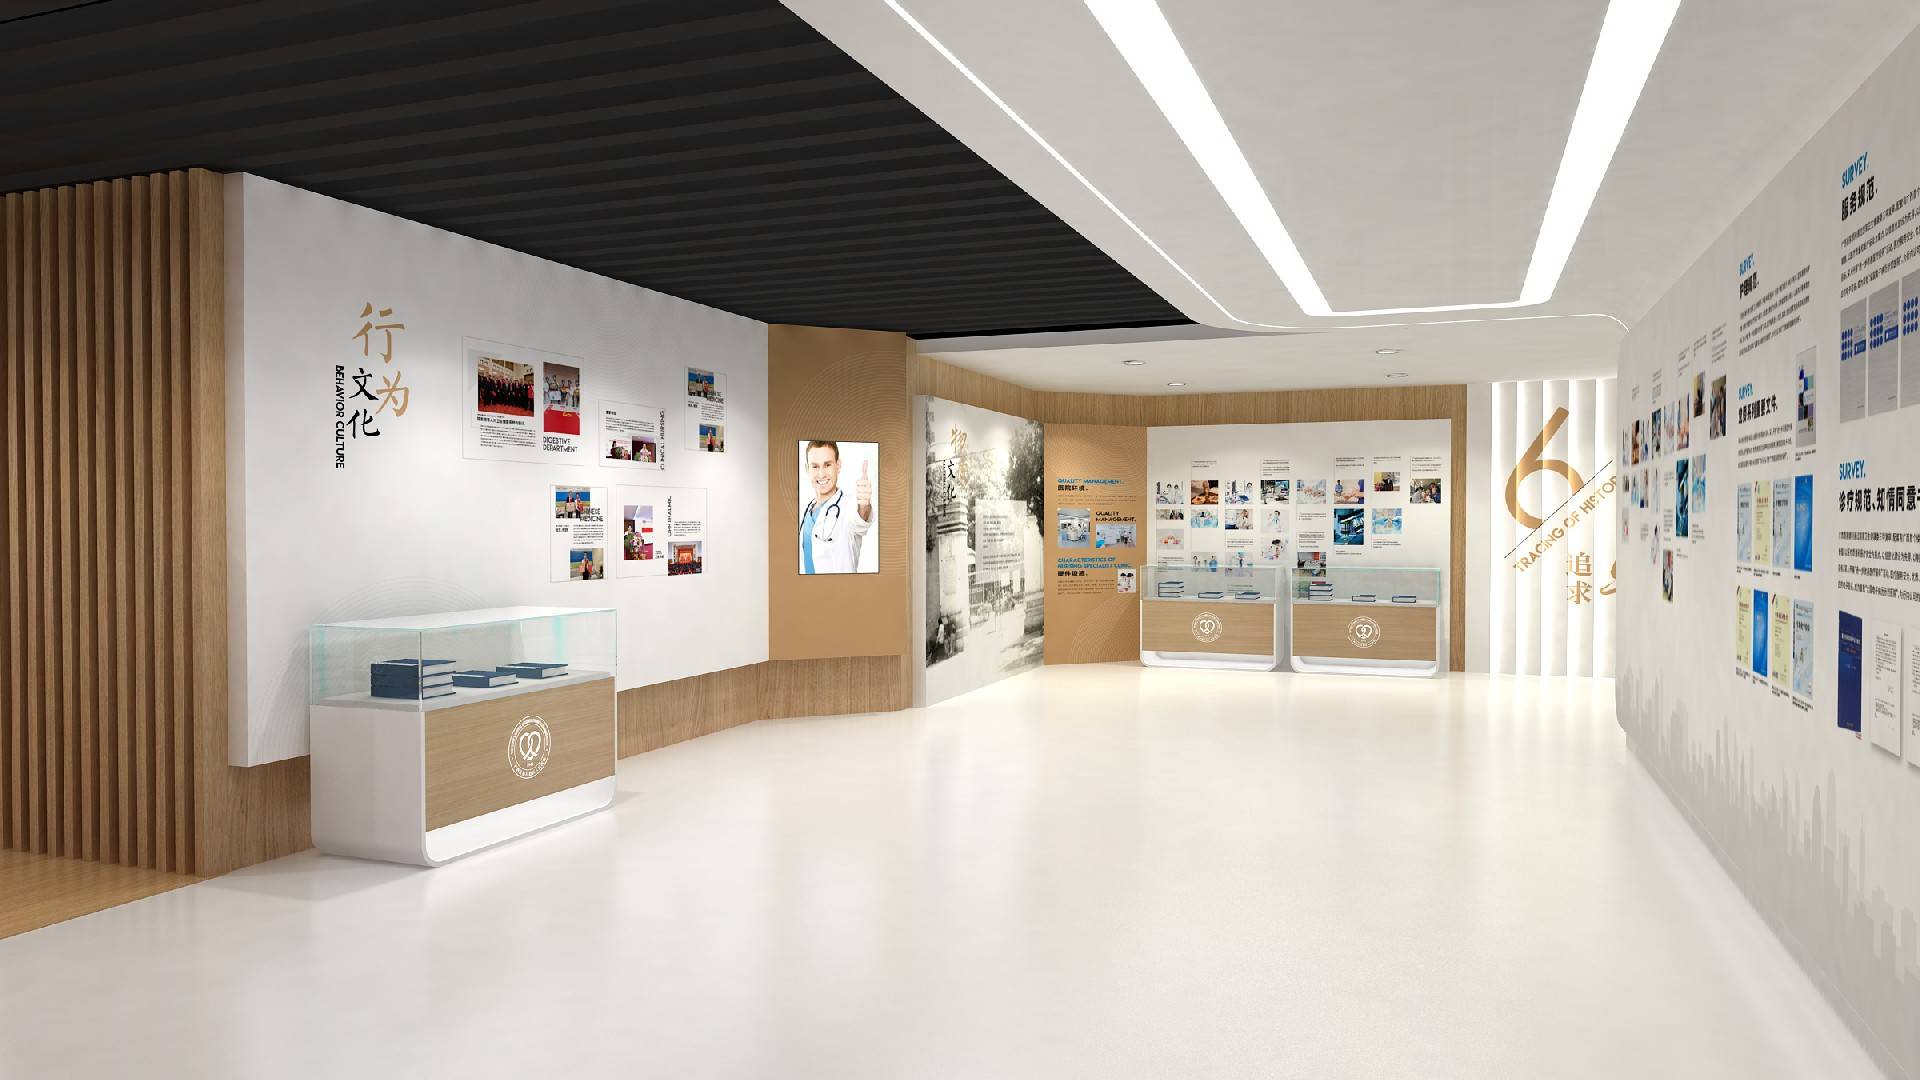 这是一张现代风格的室内设计图，展示了明亮整洁的展览厅，墙上挂有信息图板和照片，地面干净，设计简约大方。